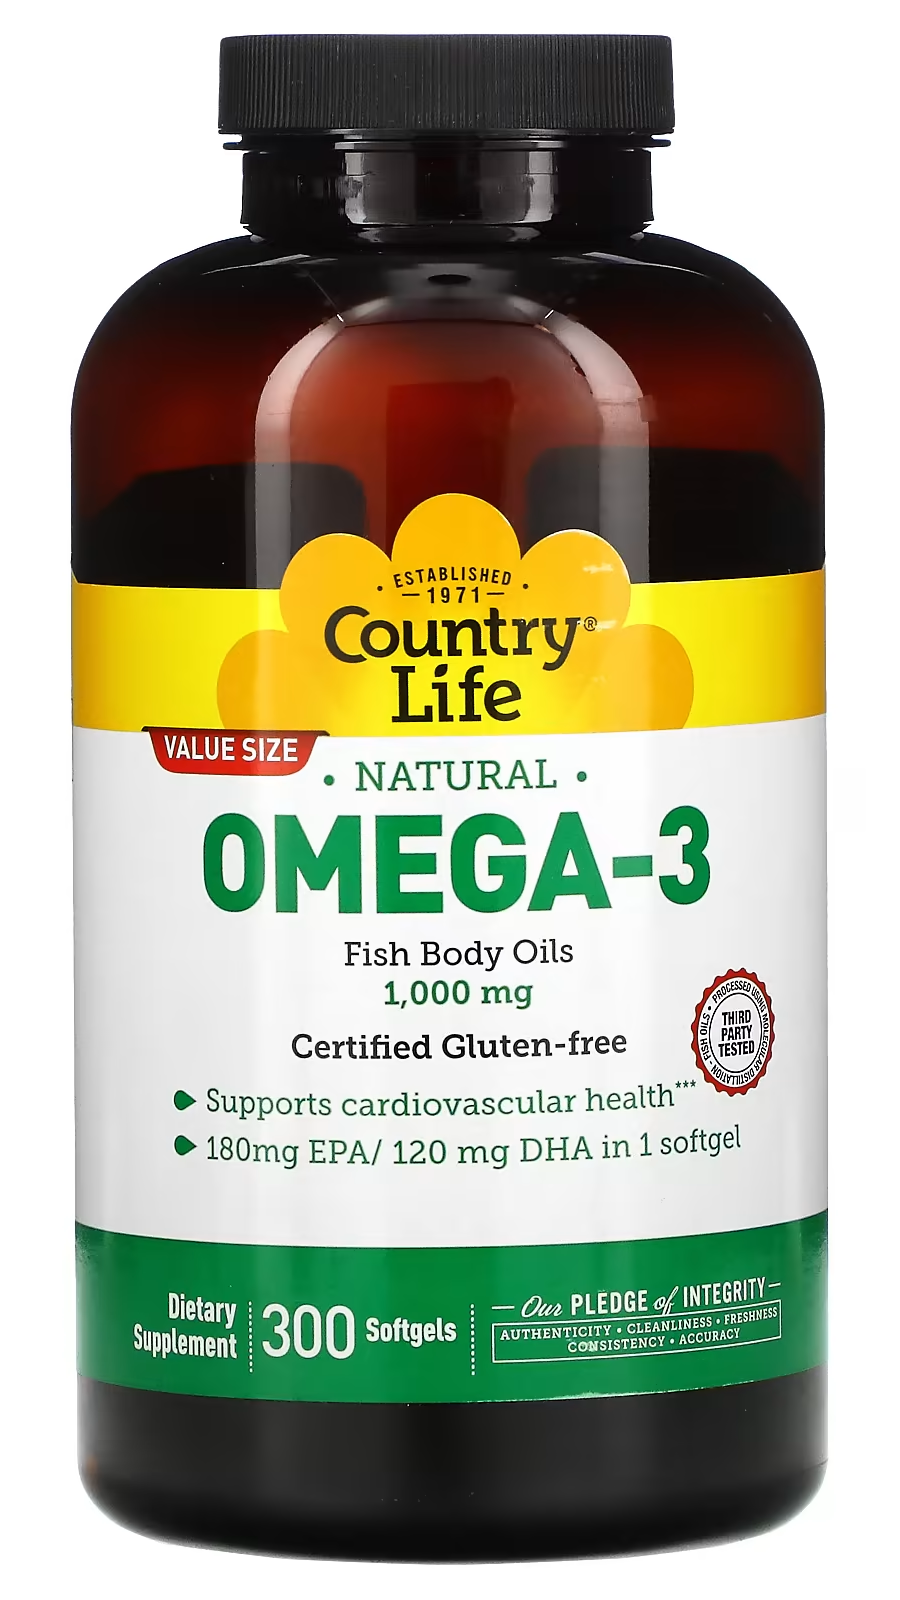 Life omega 3. Nfo Омега 3 120 капсул. Рыбий жир nfo. Norwegian Fish Oil Омега-3 форте капс 120 шт. Super Omega-3 EPA/DHA Fish Oil, Sesame Lignans & Olive extract.